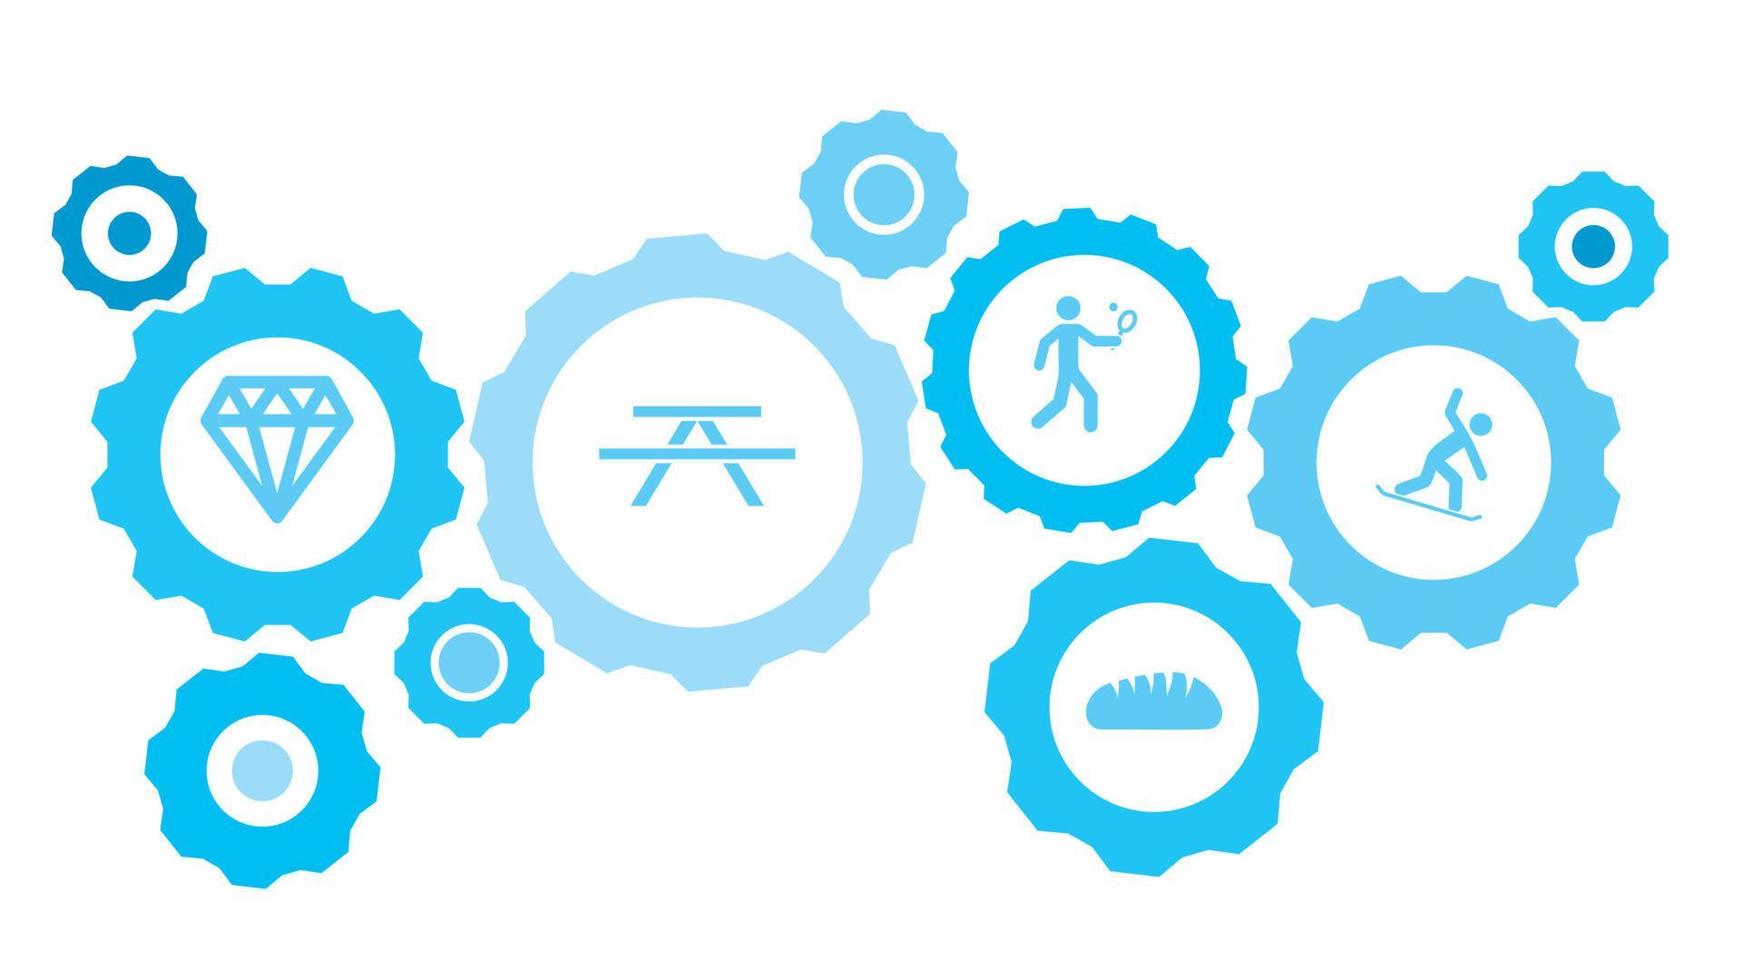 snowboard engrenagem azul ícone definir. abstrato fundo com conectado engrenagens e ícones para logística, serviço, envio, distribuição, transporte, mercado, comunicar conceitos vetor